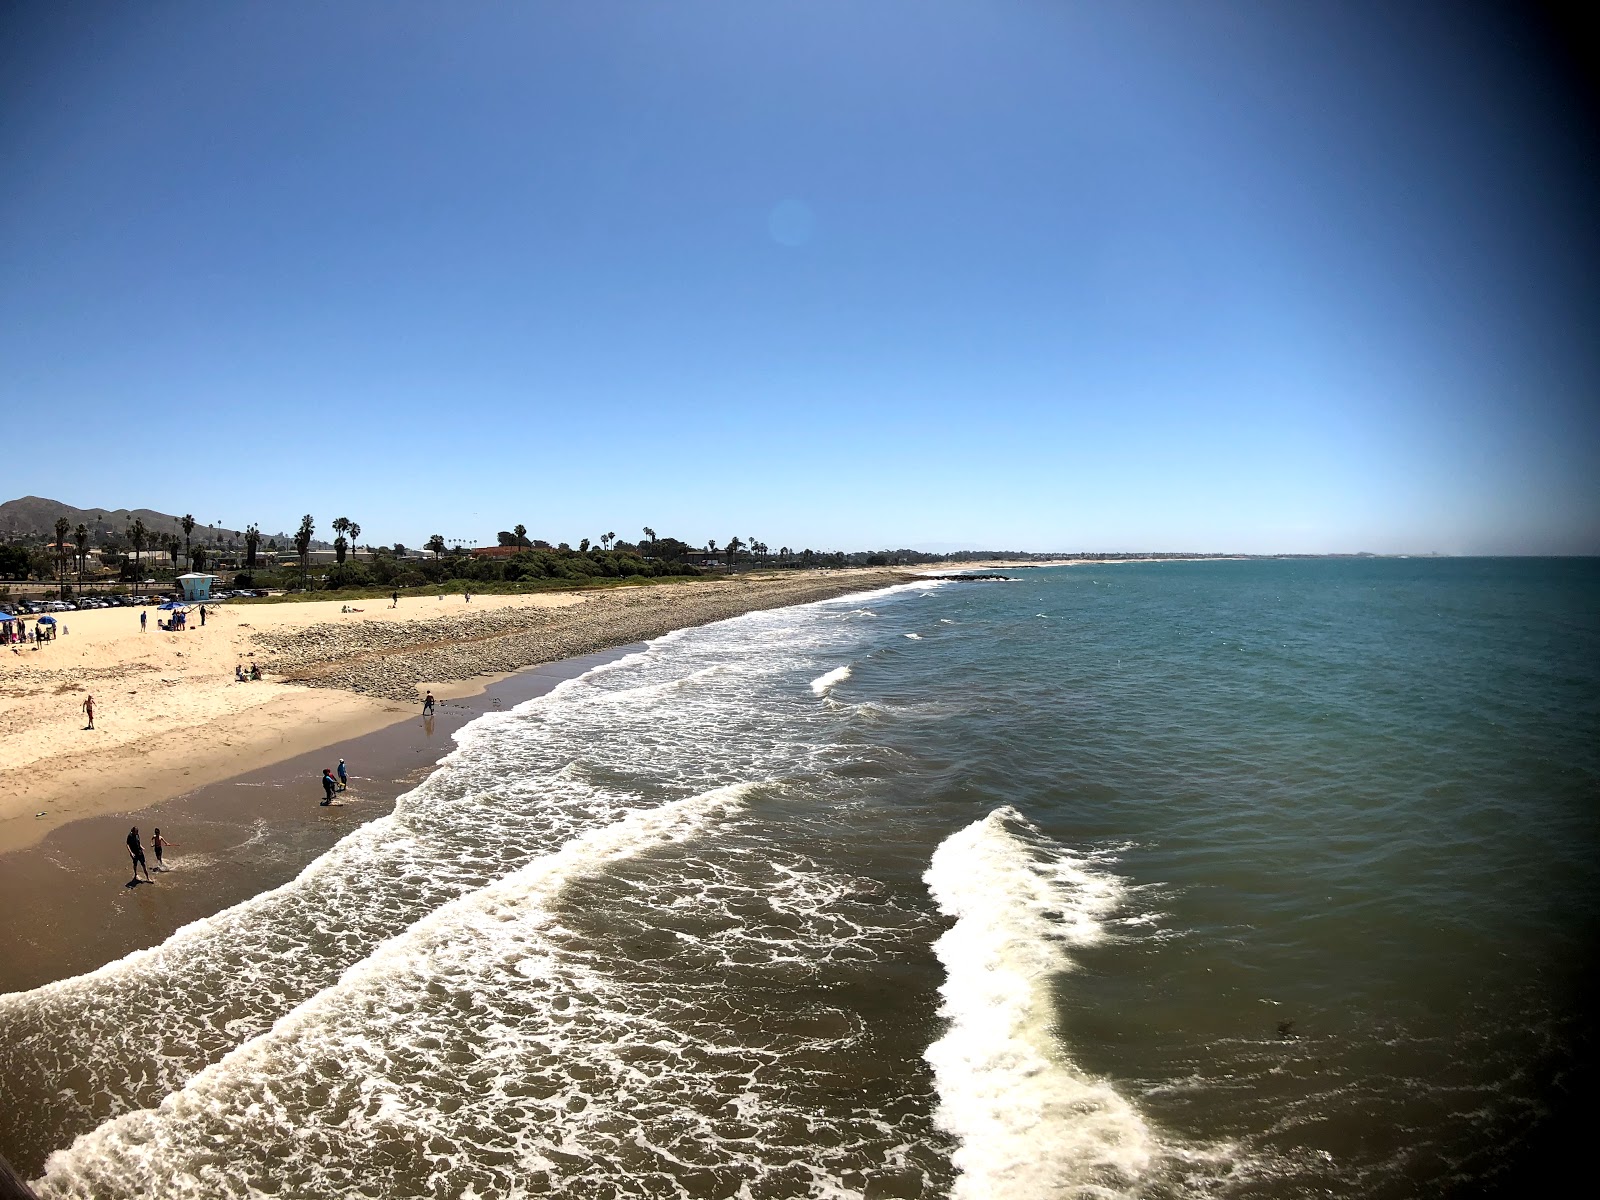 Fotografie cu Ventura Beach - locul popular printre cunoscătorii de relaxare